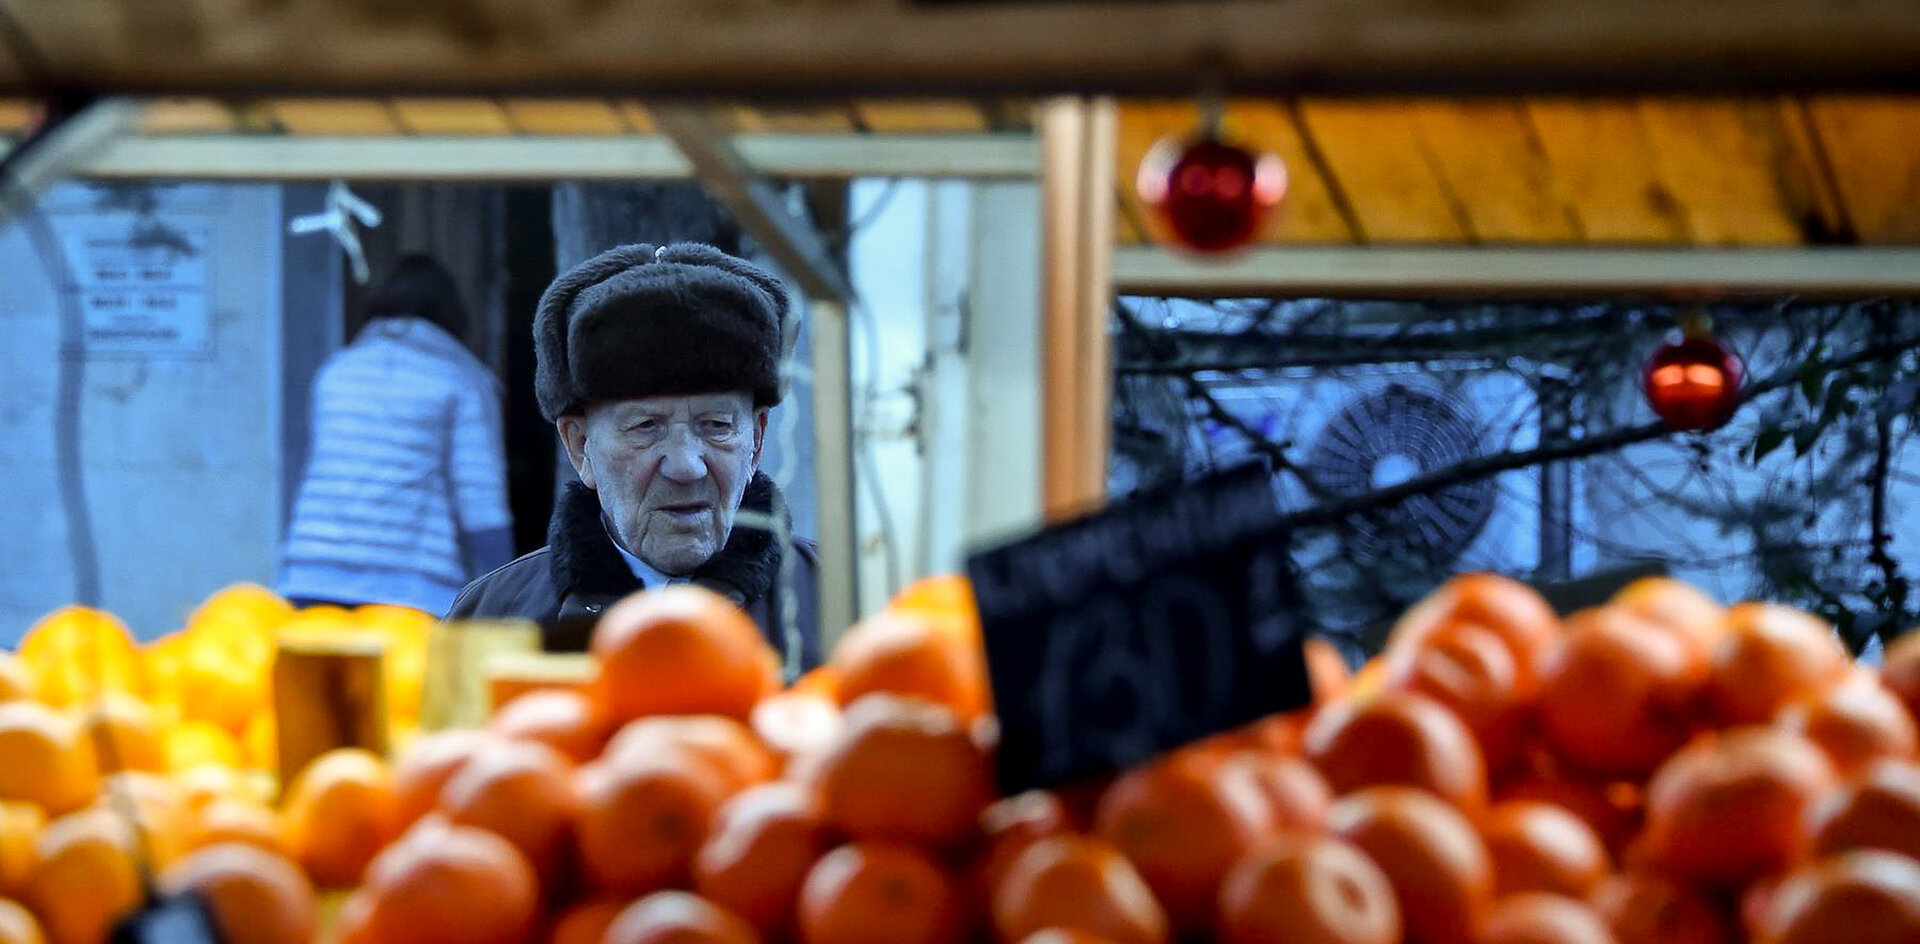 Нелегальные торговцы в Петербурге перед Новым годом продают просроченный товар